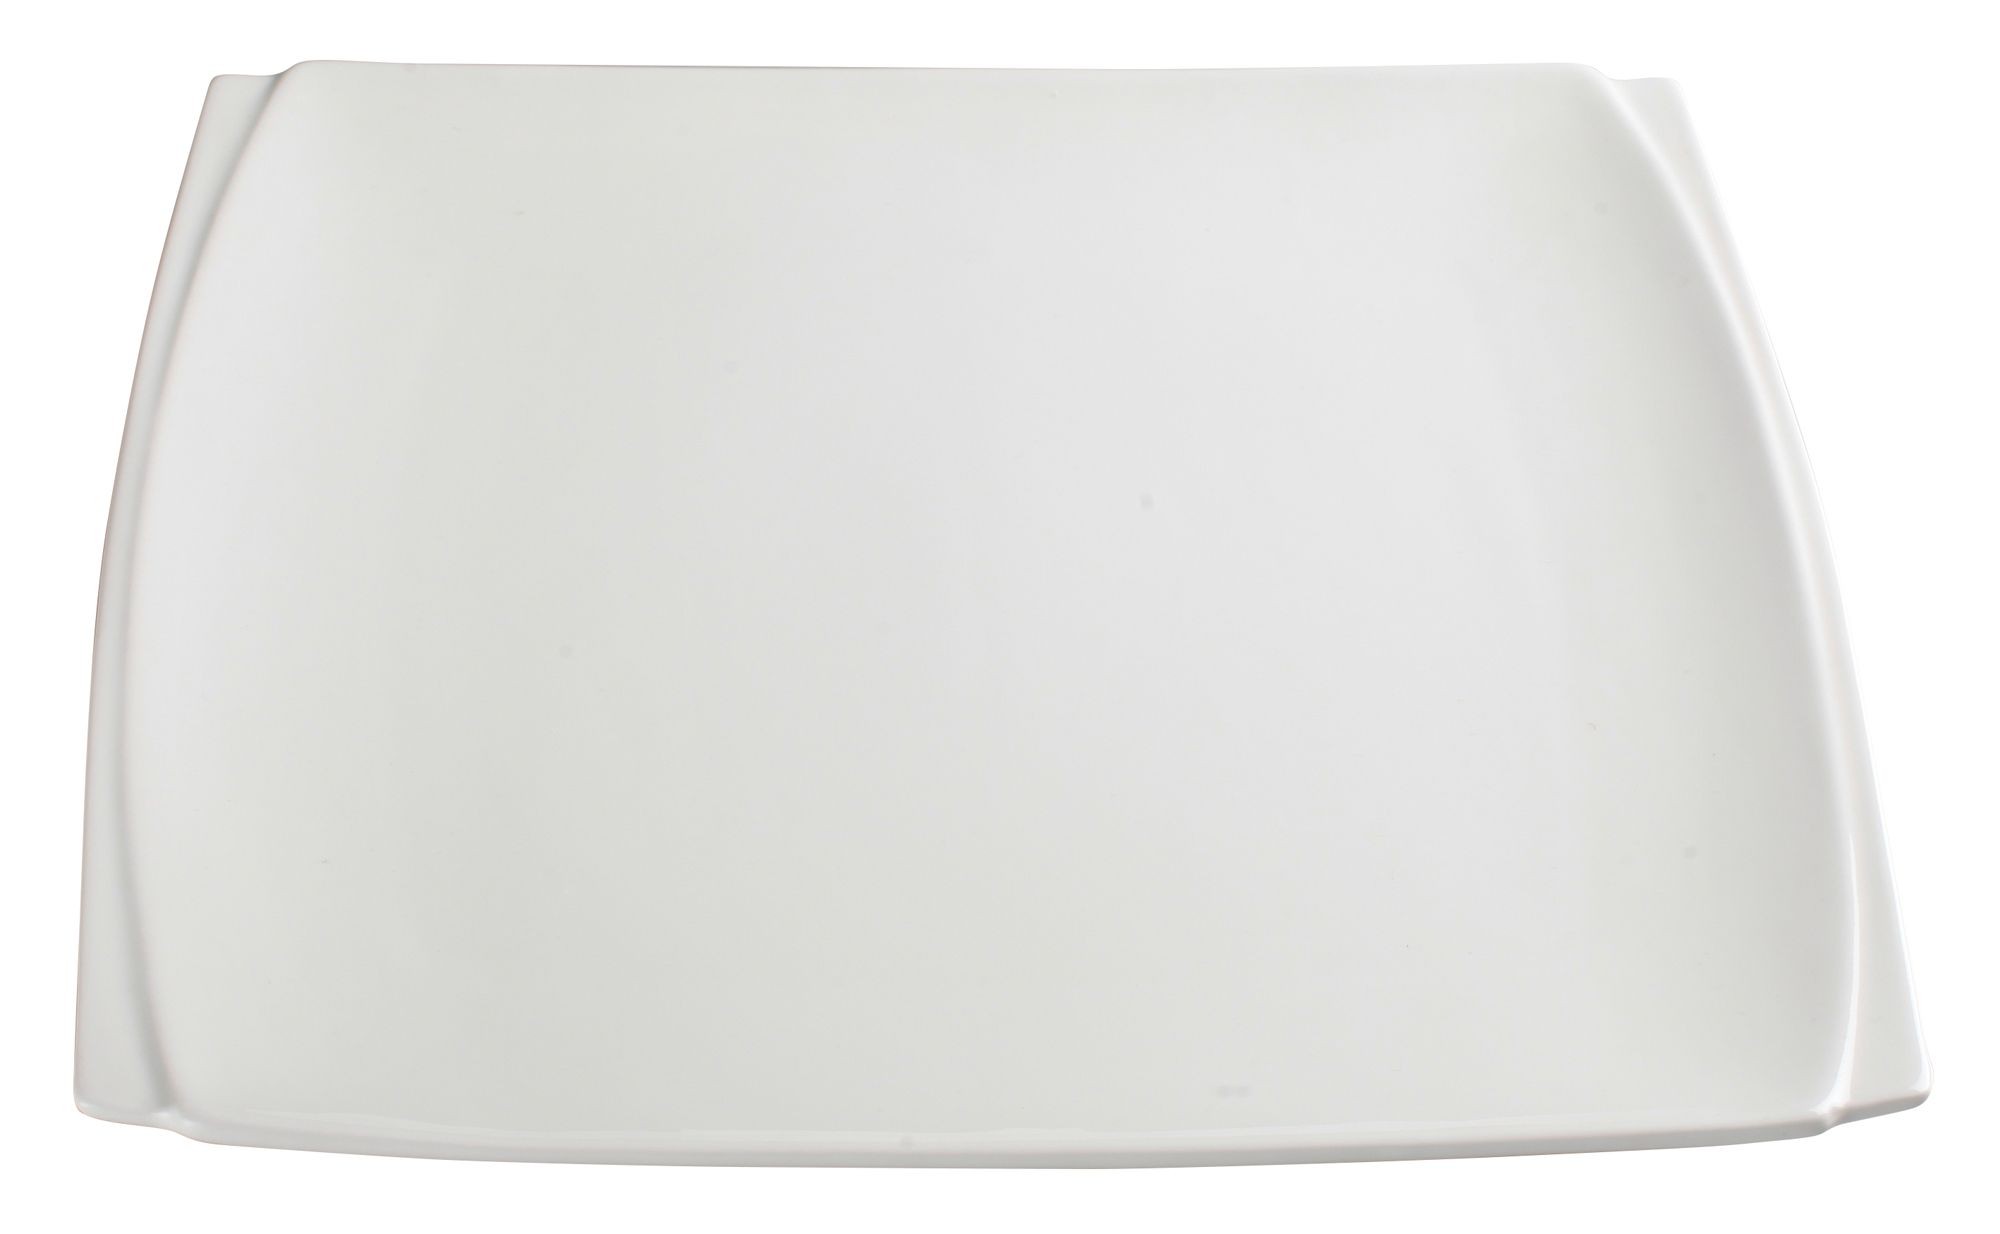 Winco WDP009-102 Bettini Porcelain Bright White Square Plate 11"